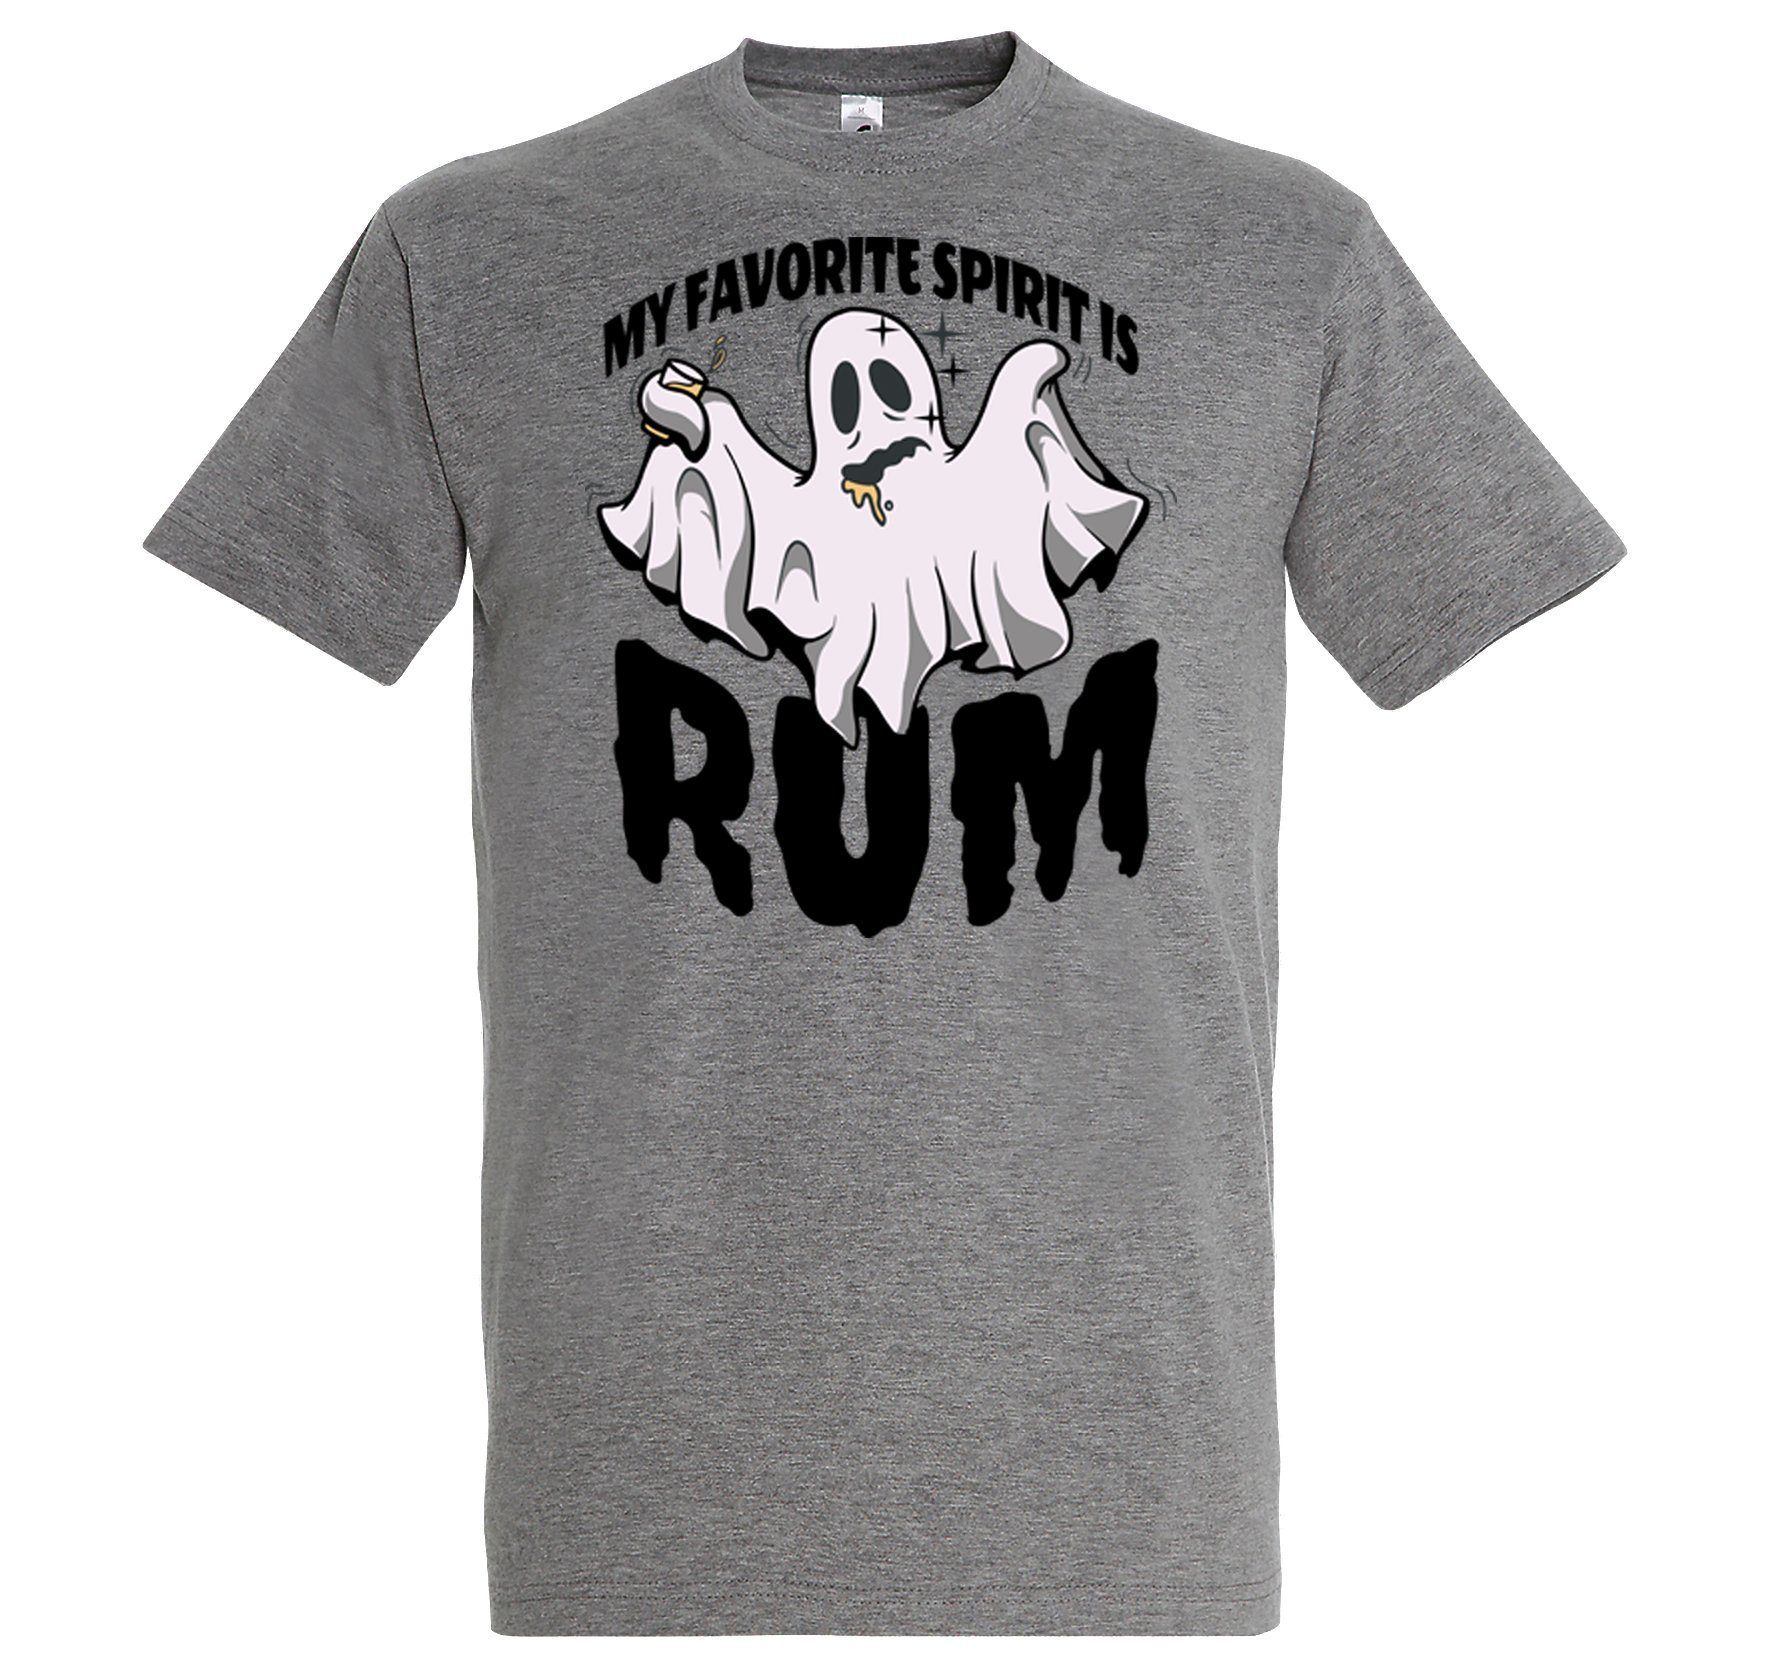 Youth Designz T-Shirt My favorite Spirit is RUM Herren Shirt im Fun-Look Grau